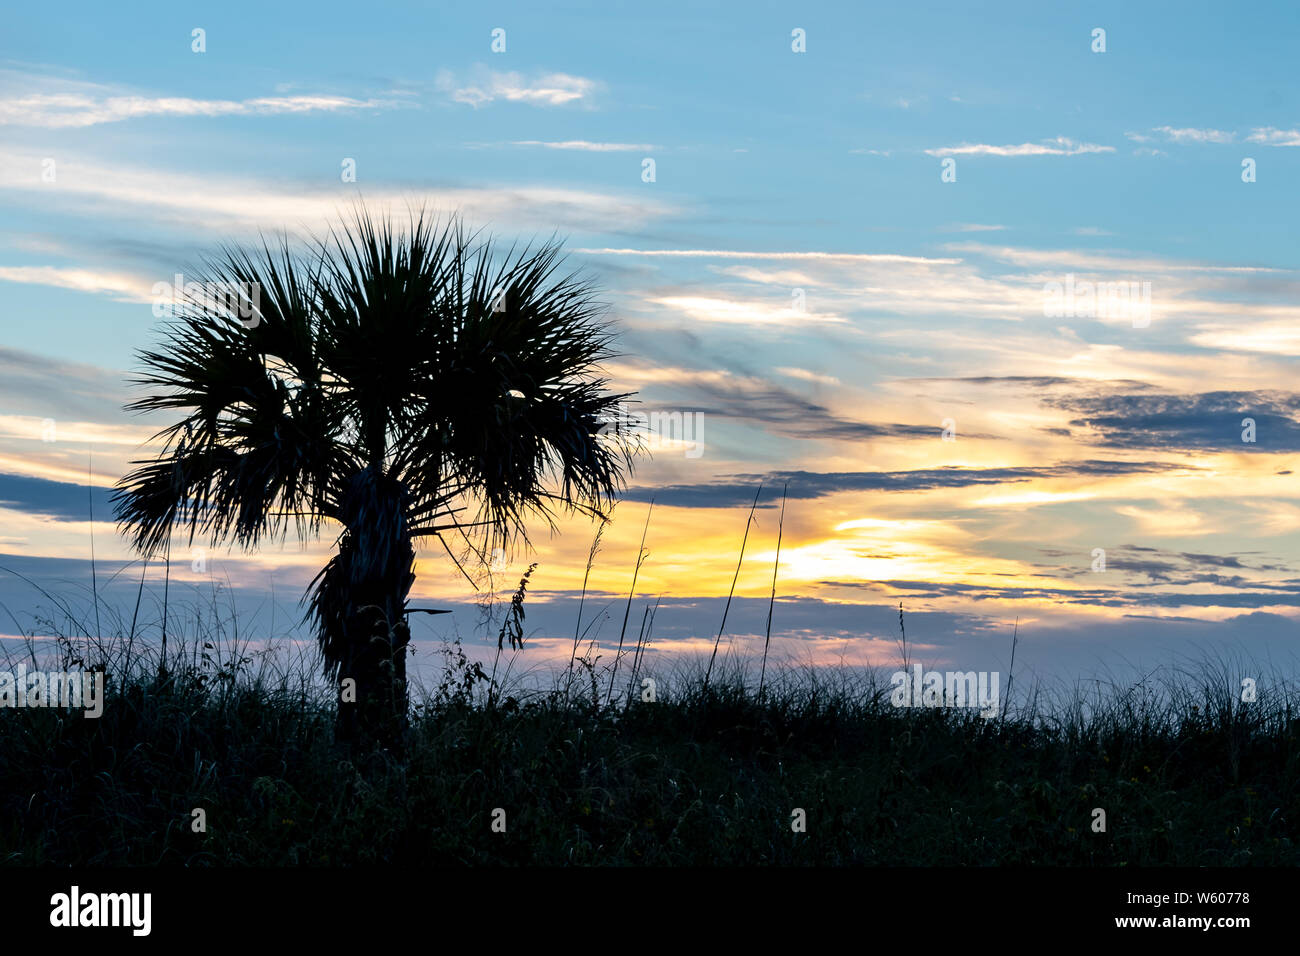 Blau Töne in den Himmel, während die Sonne untergeht. Silhouette eines Baumes und Gräser am Strand Stockfoto